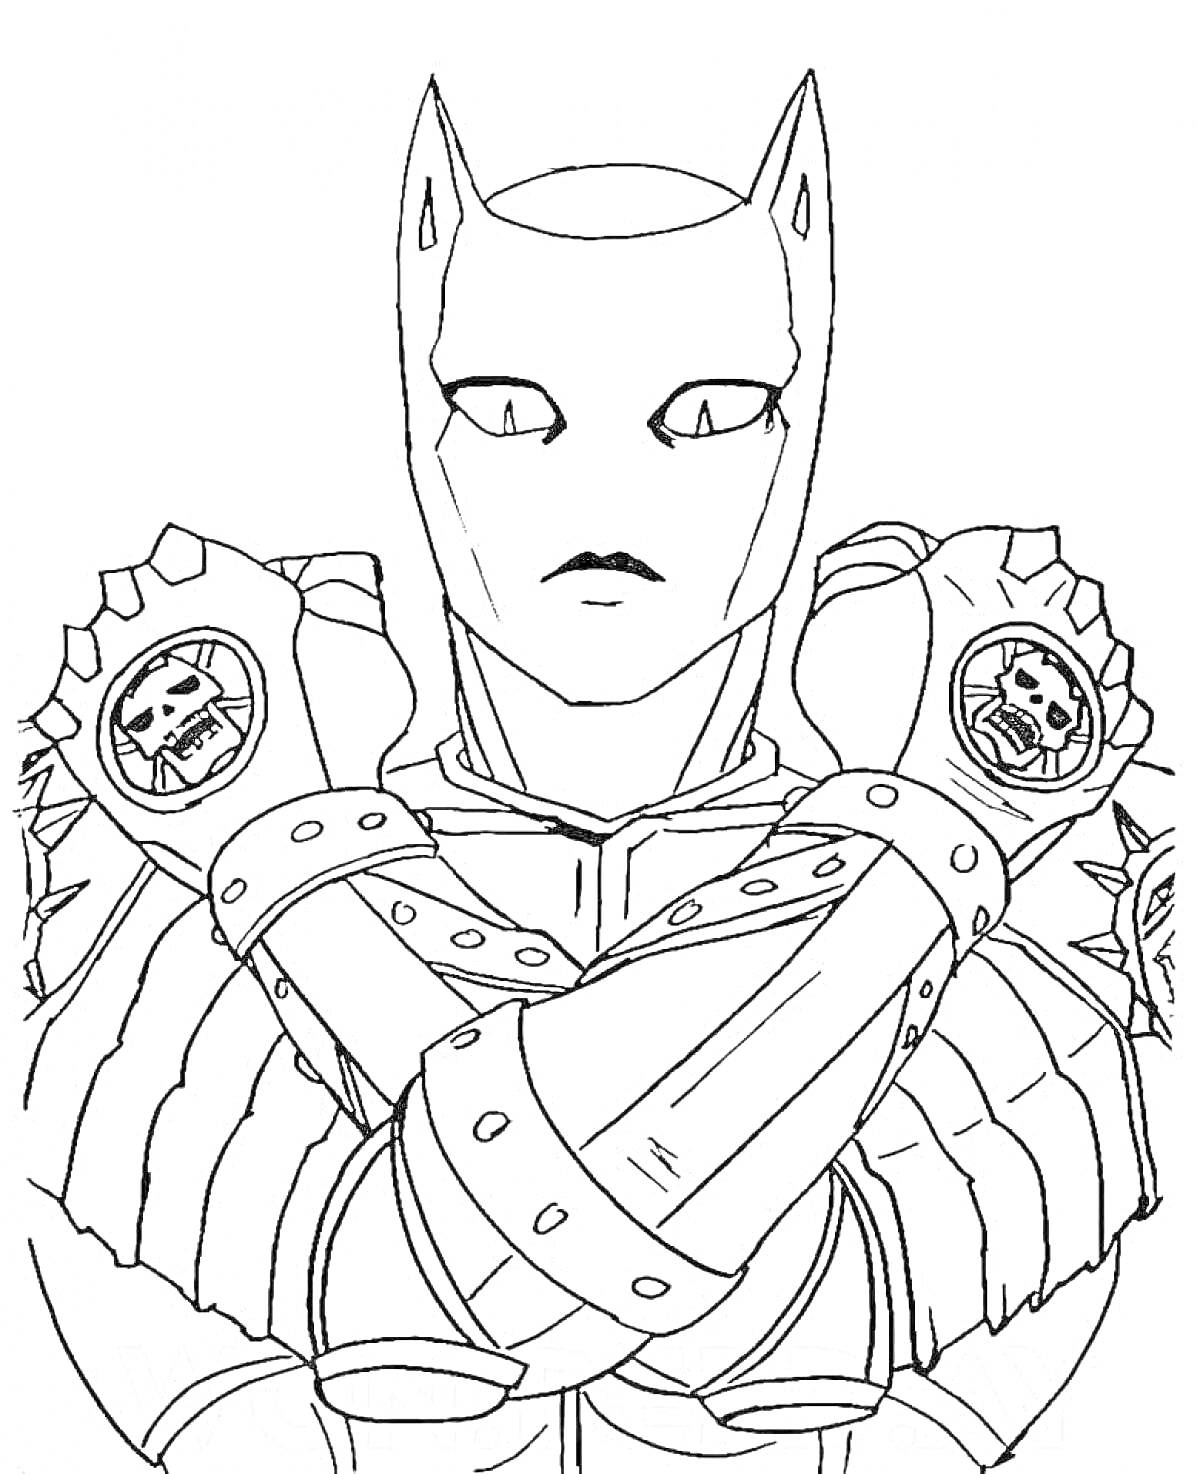 Раскраска Стенд персонажа из JoJo Bizarre Adventure с маской и перекрещенными руками в бронях с черепами